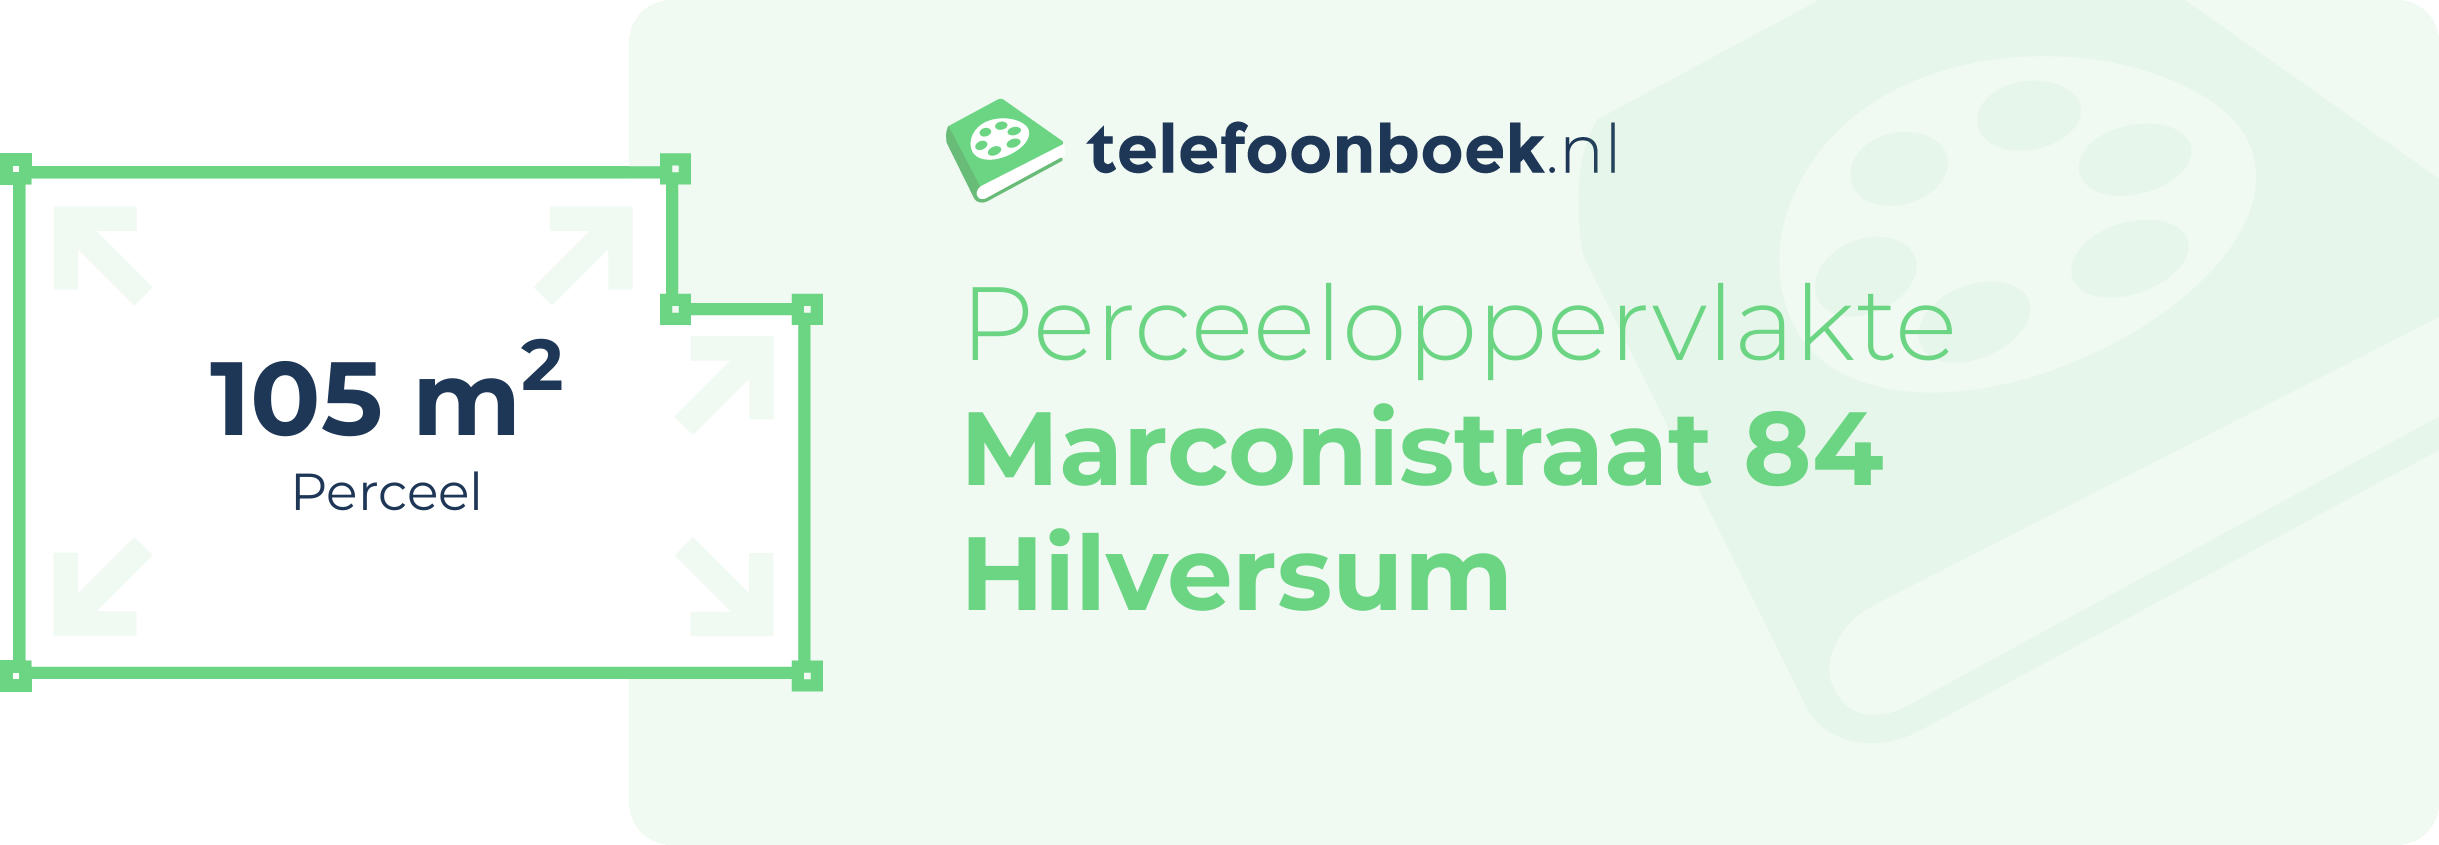 Perceeloppervlakte Marconistraat 84 Hilversum